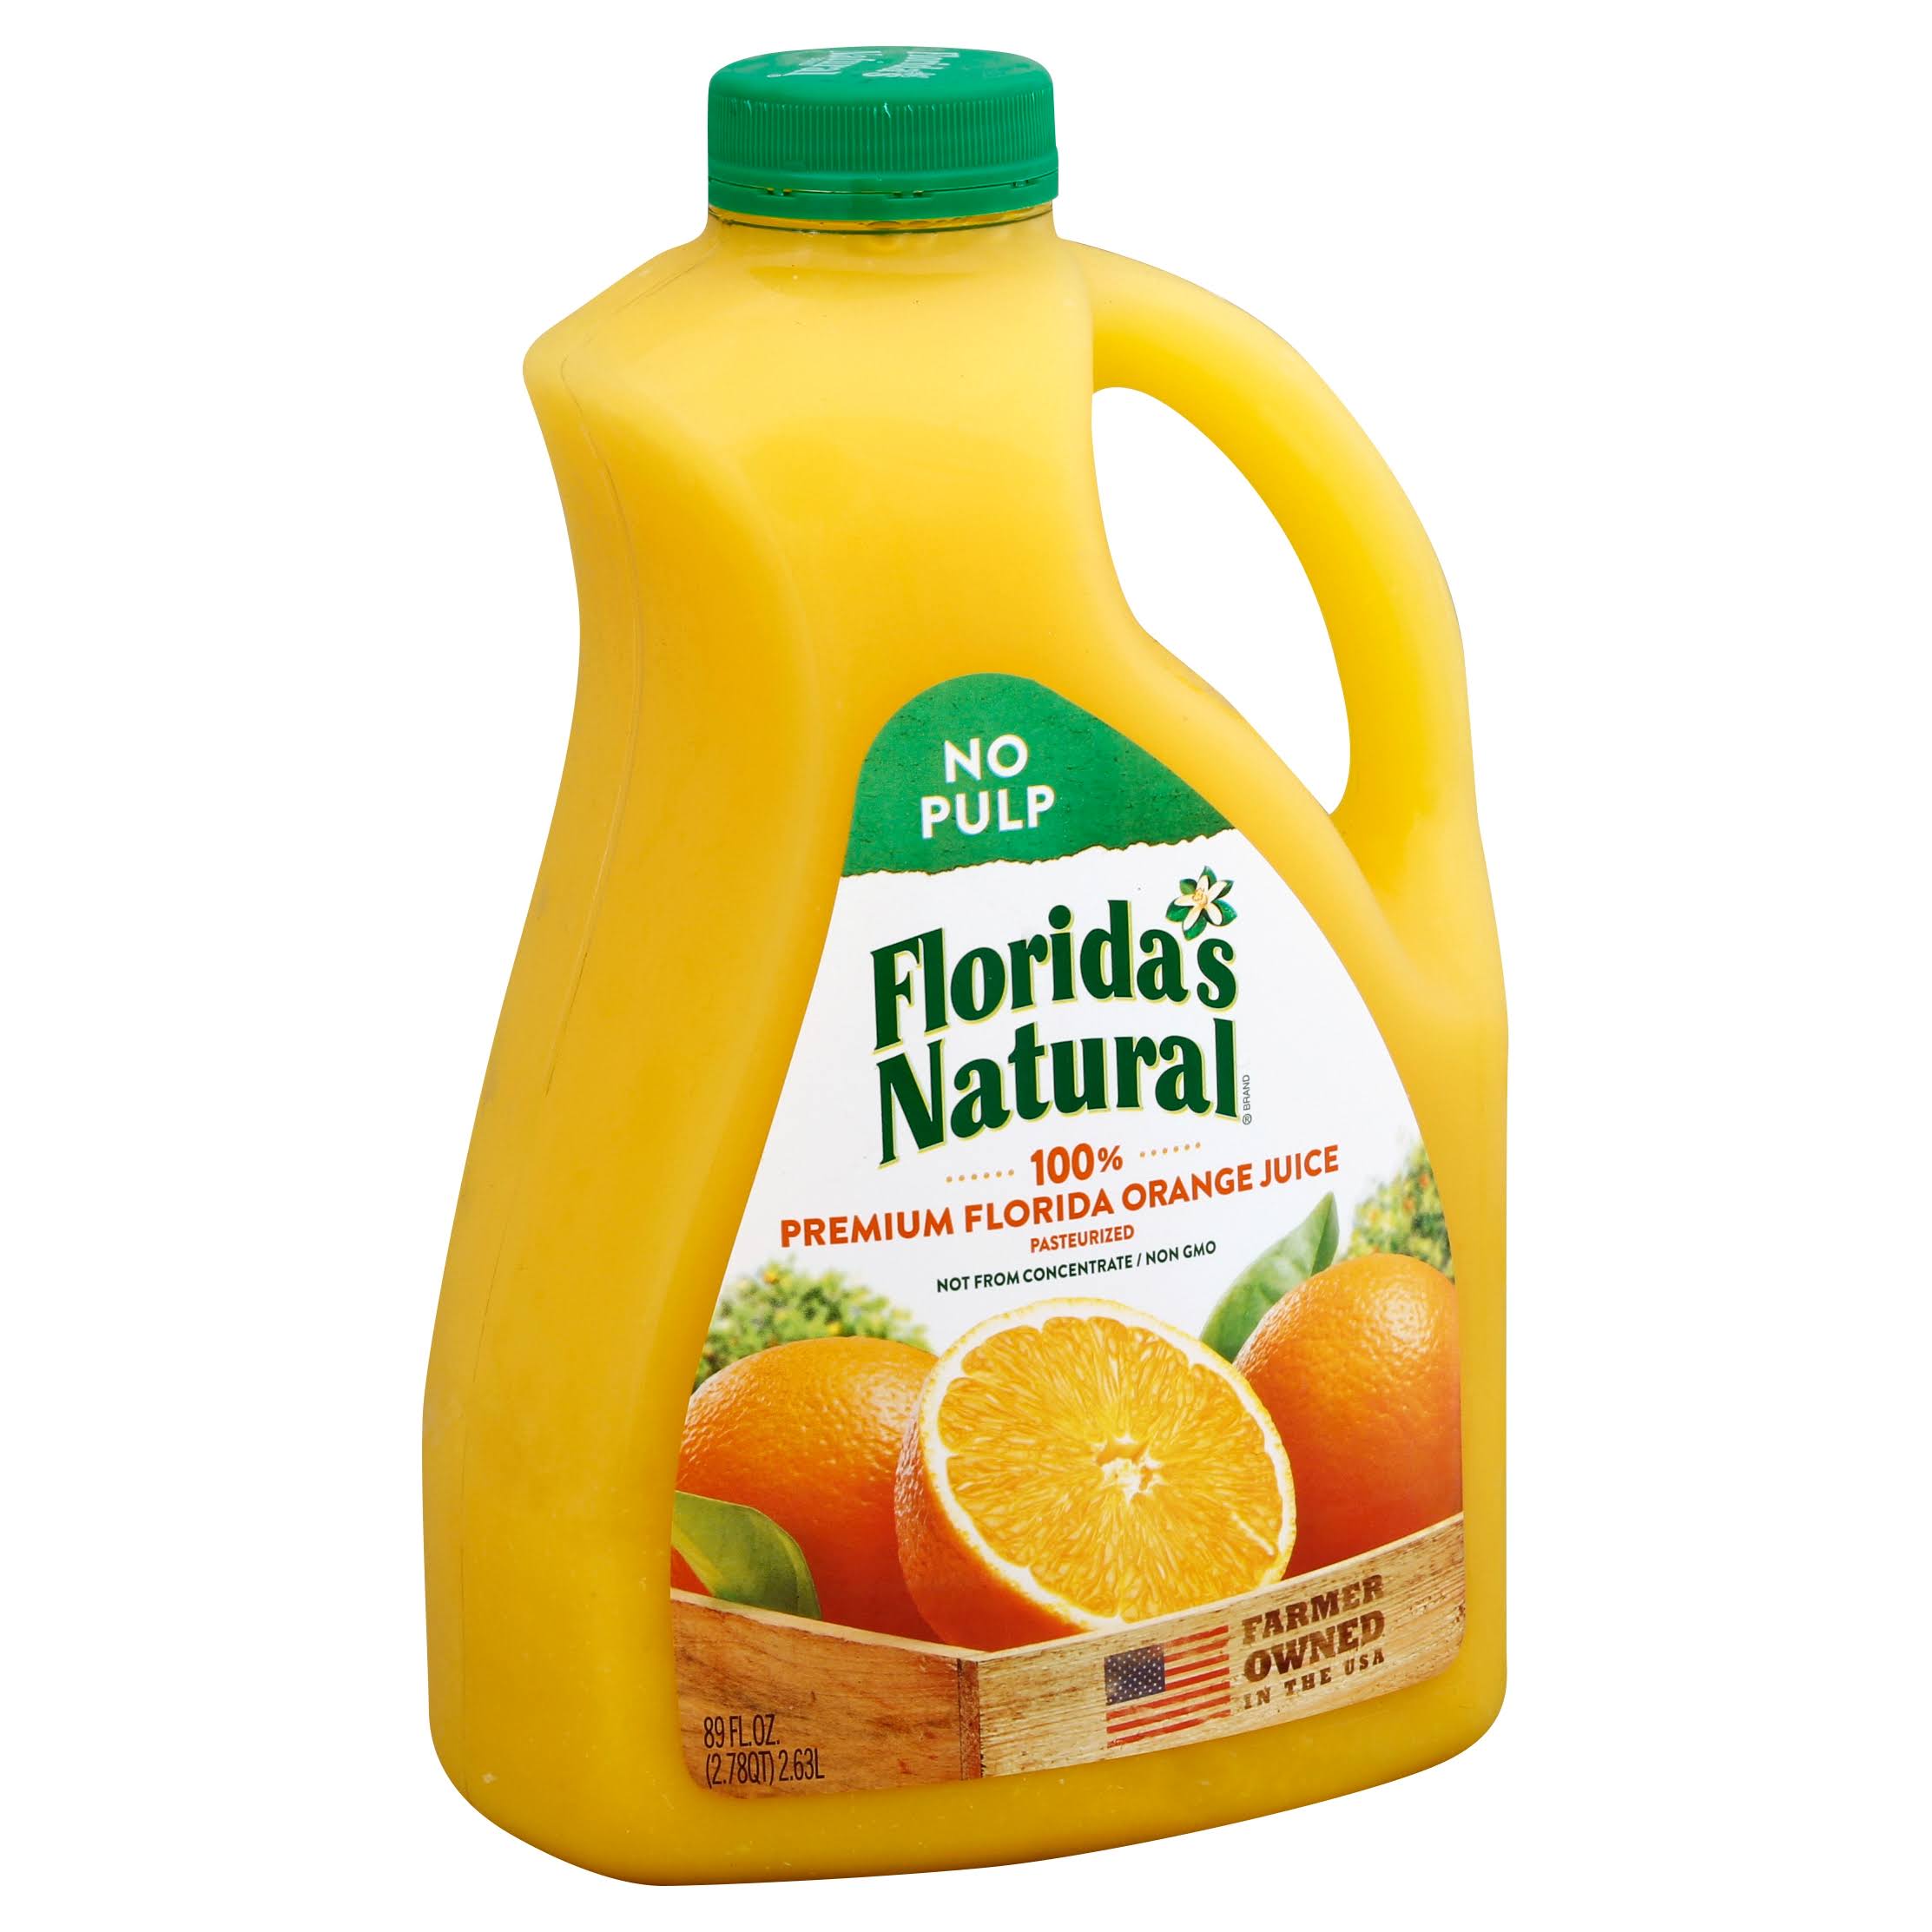 Florida's Natural No Pulp Orange Juice - 89 Oz